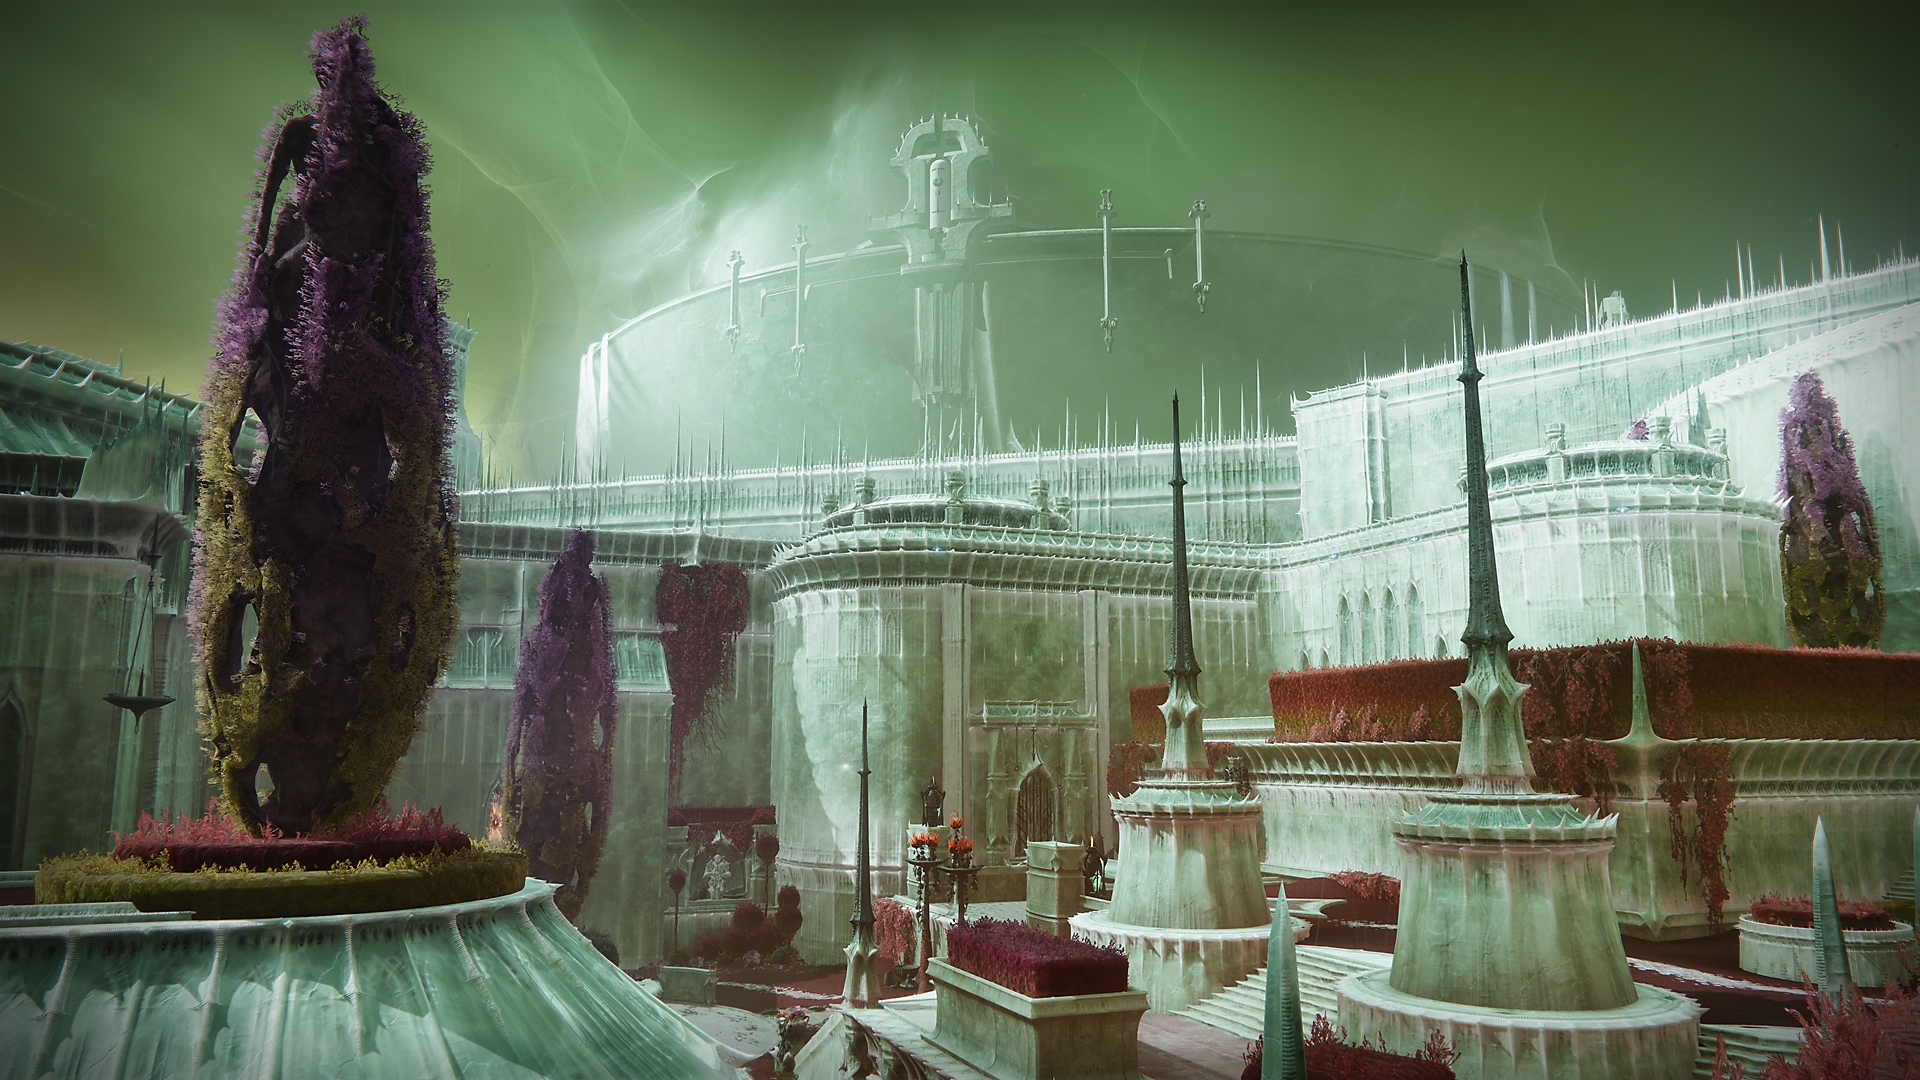 Destiny 2 – снимок экрана с таинственными зданиями